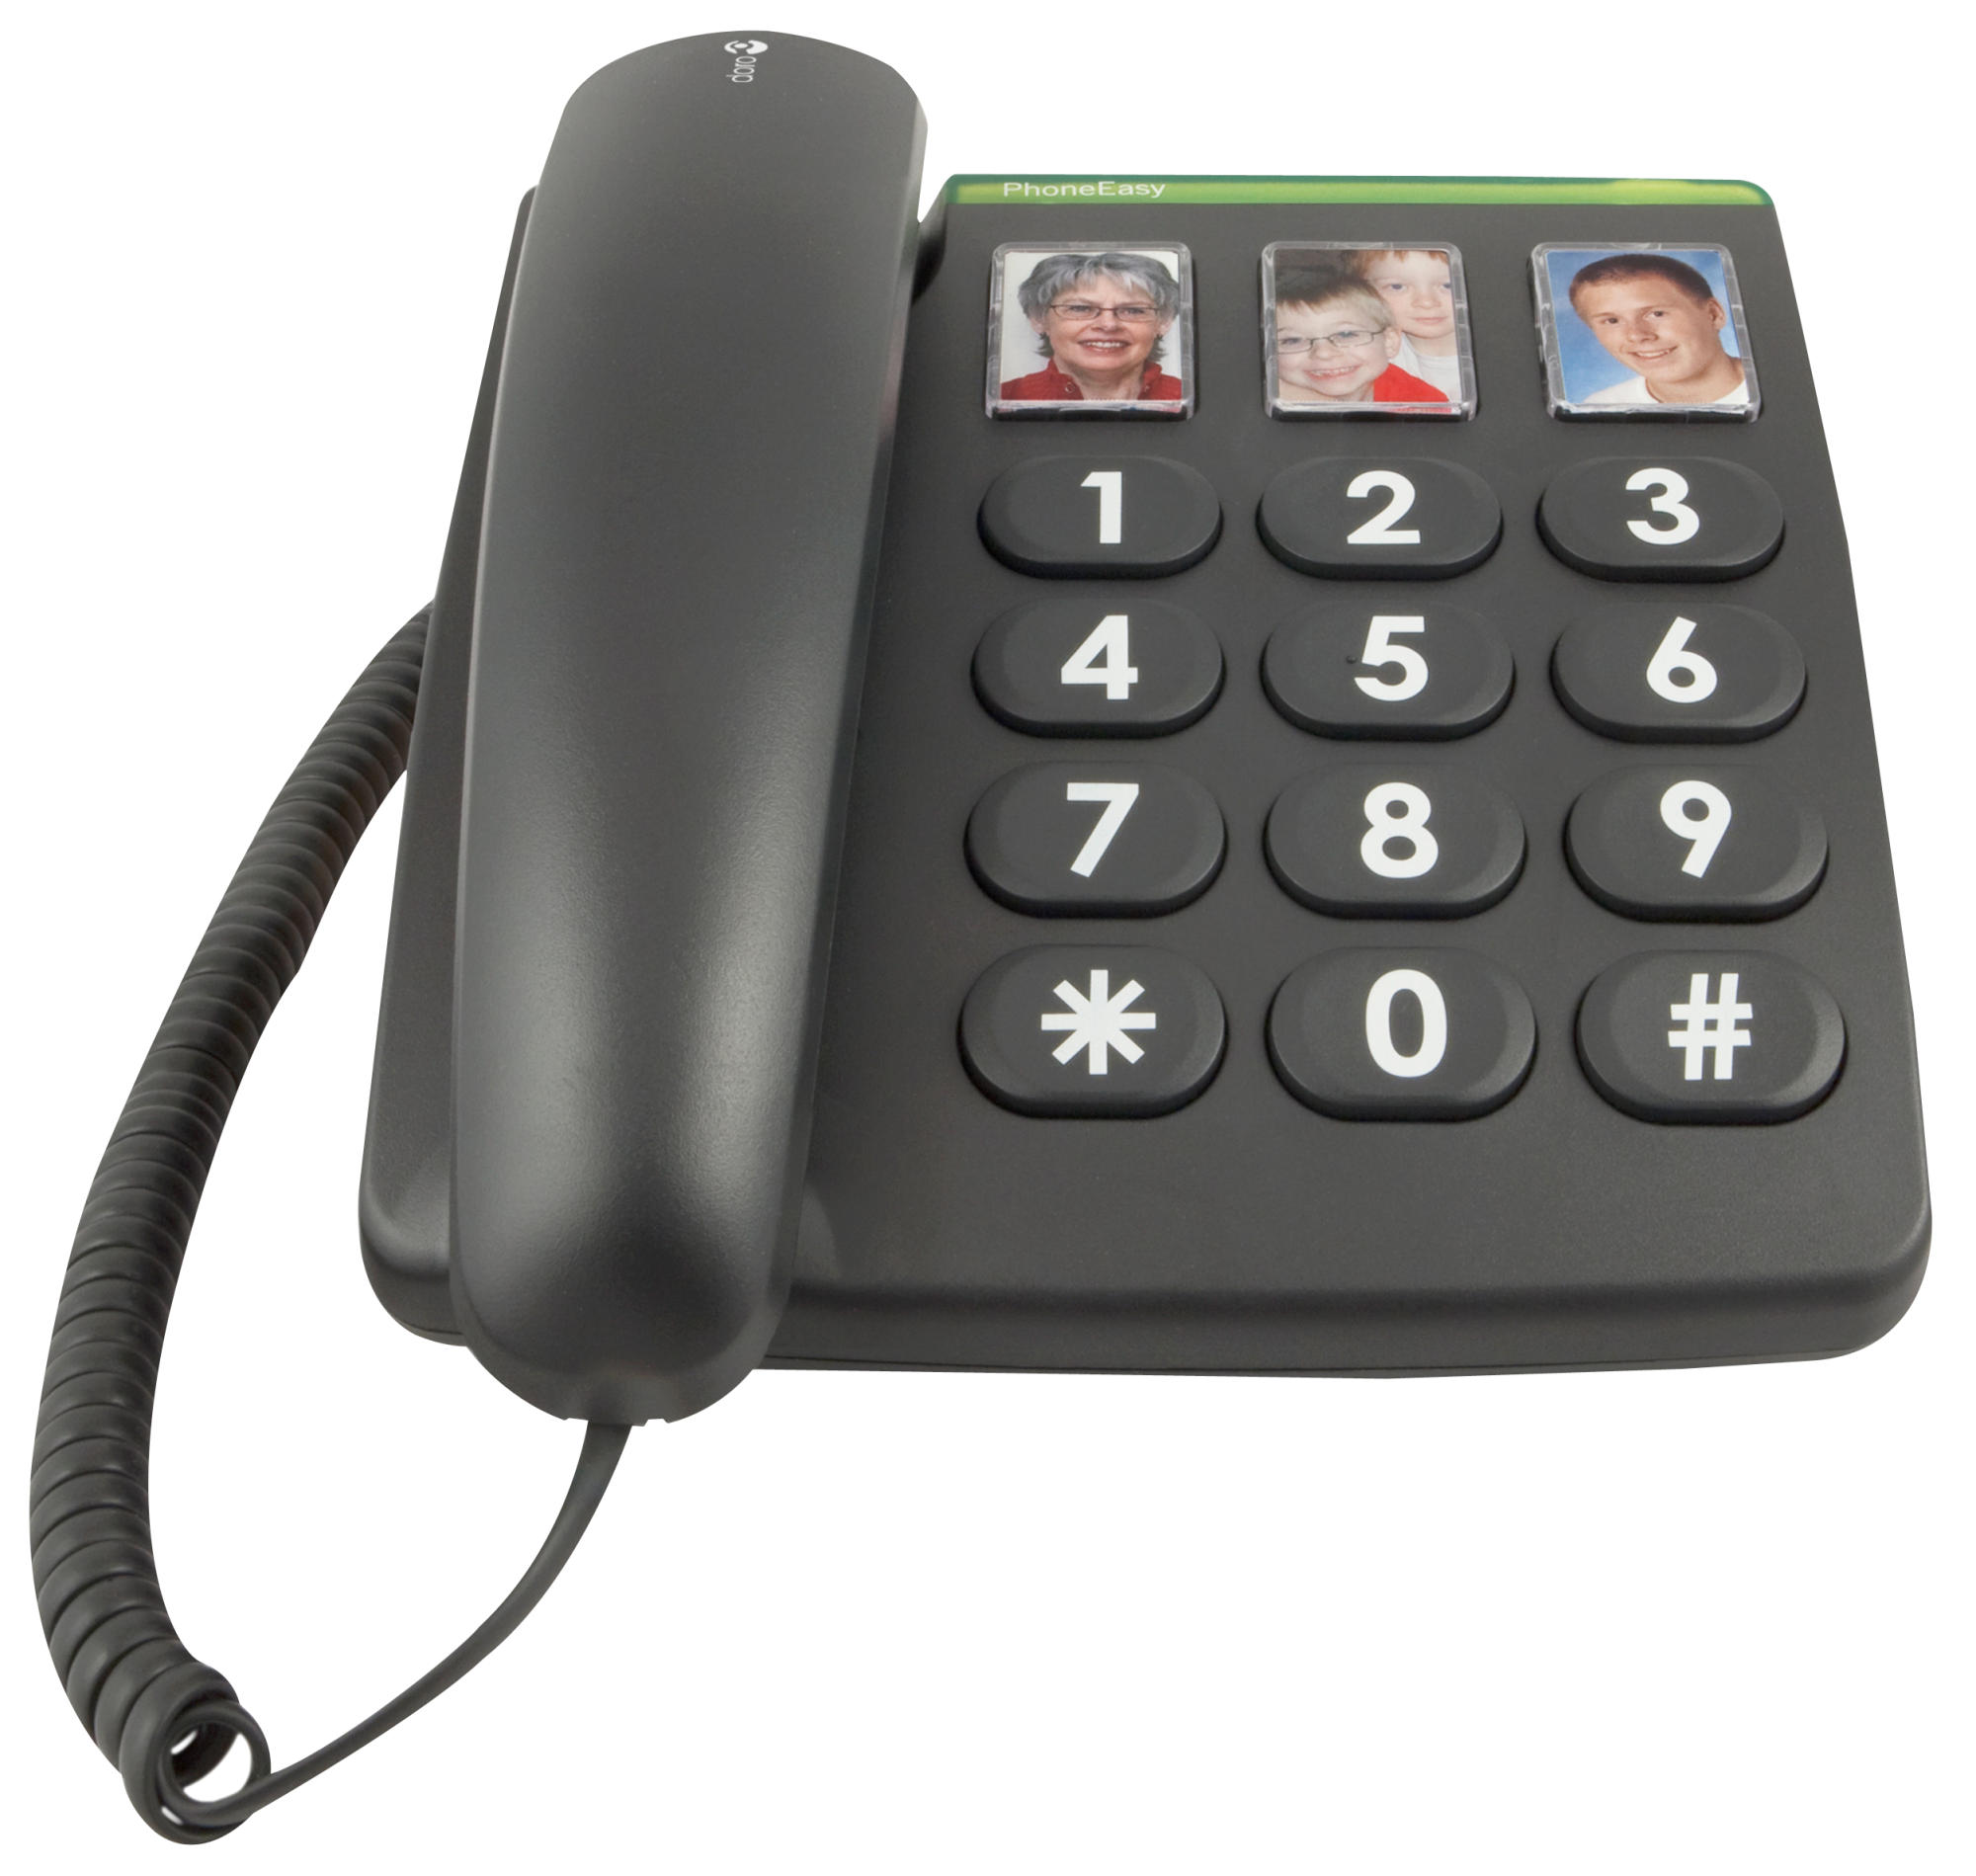 Seniorentelefon DORO PhoneEasy® 331ph